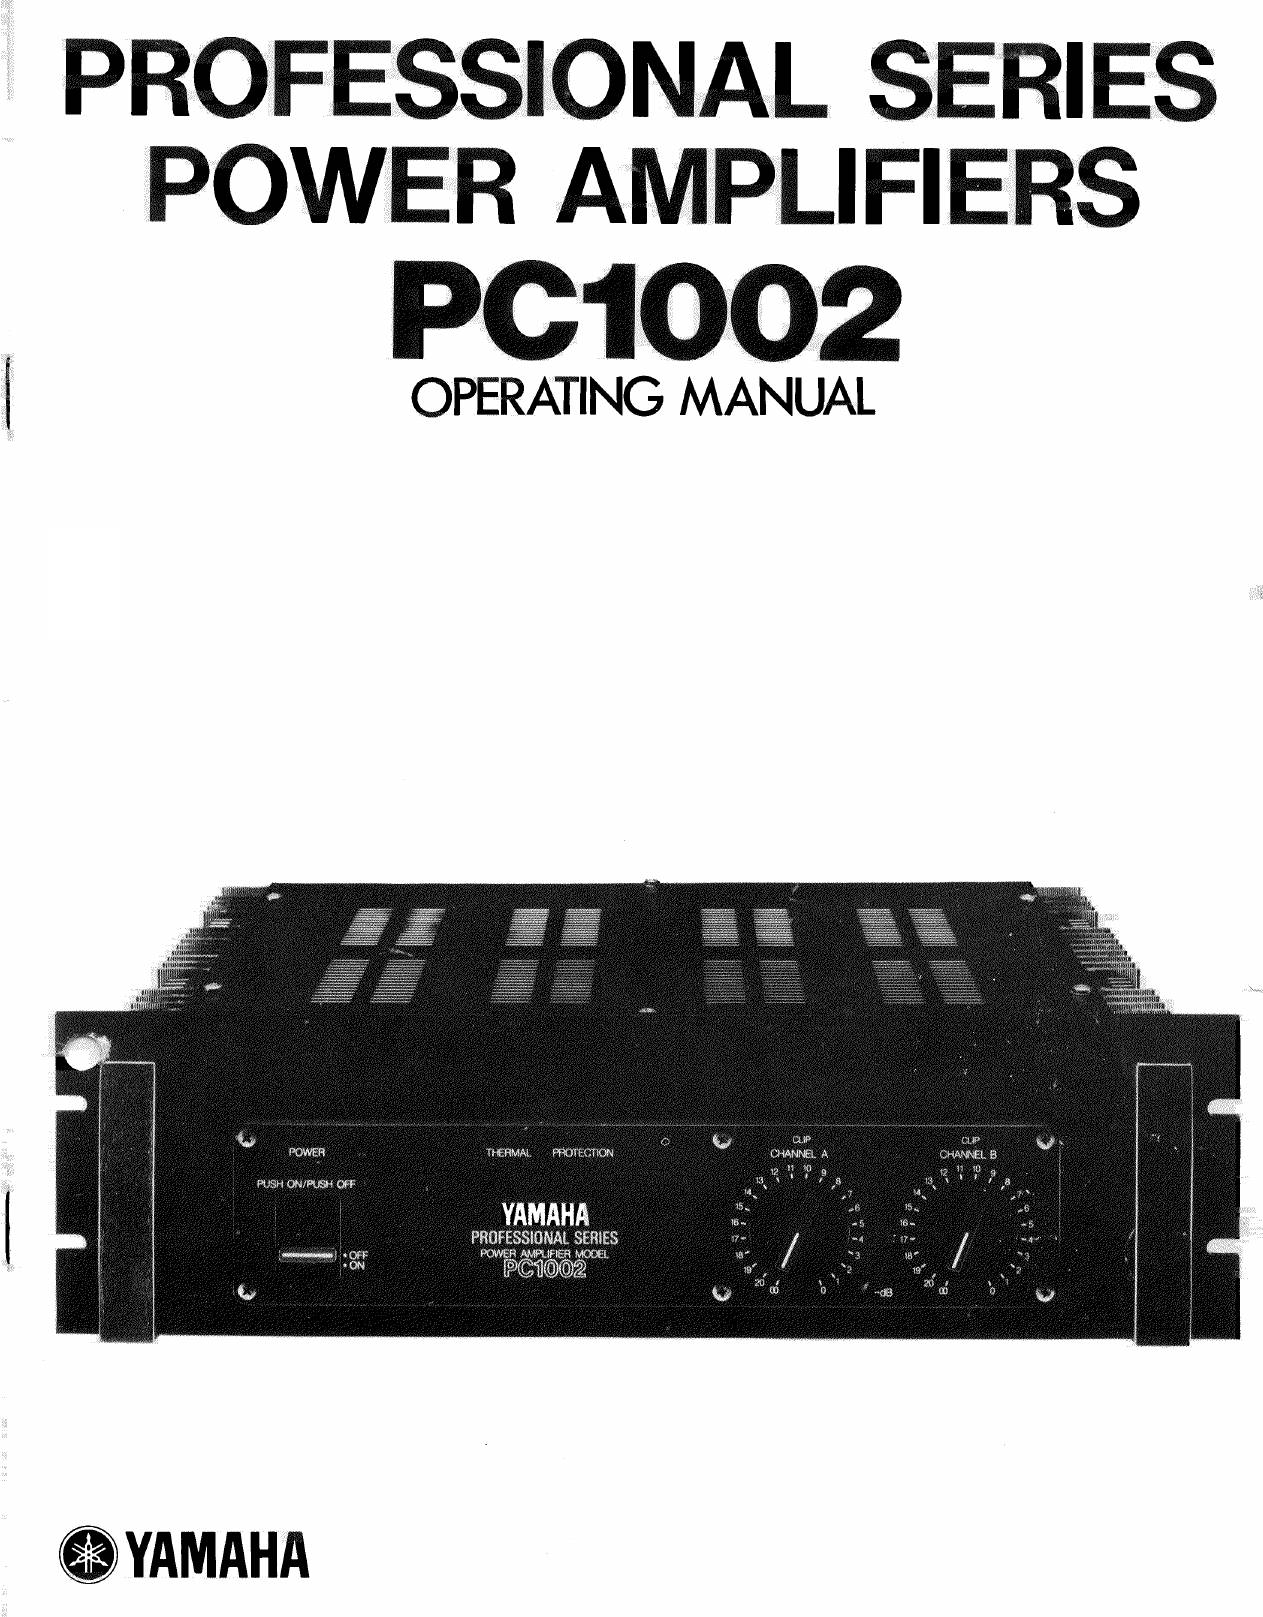 Yamaha PC1002